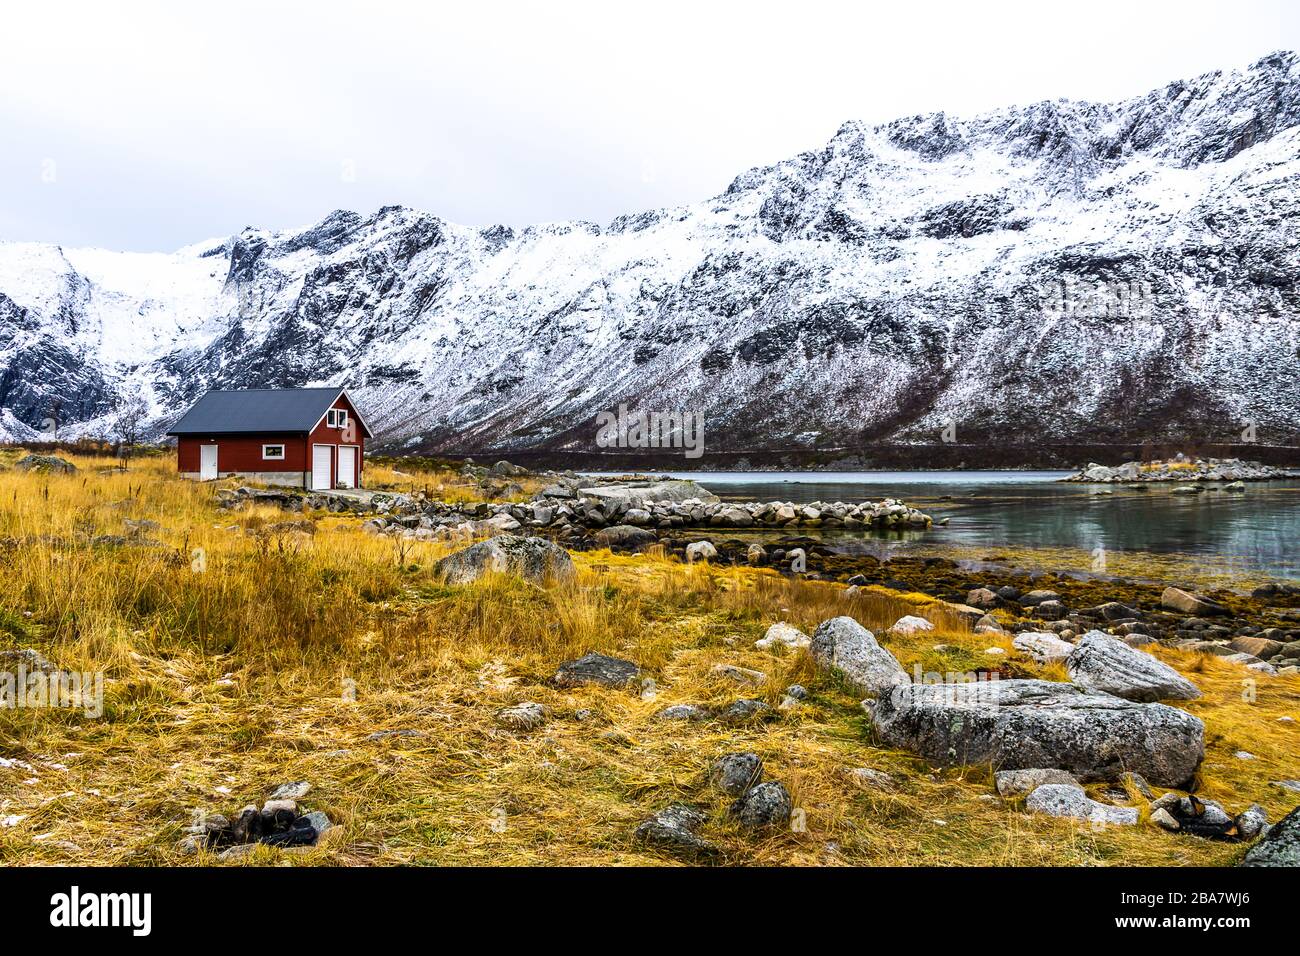 Norwegische and - images landschaft hi-res Alamy stock aussicht photography